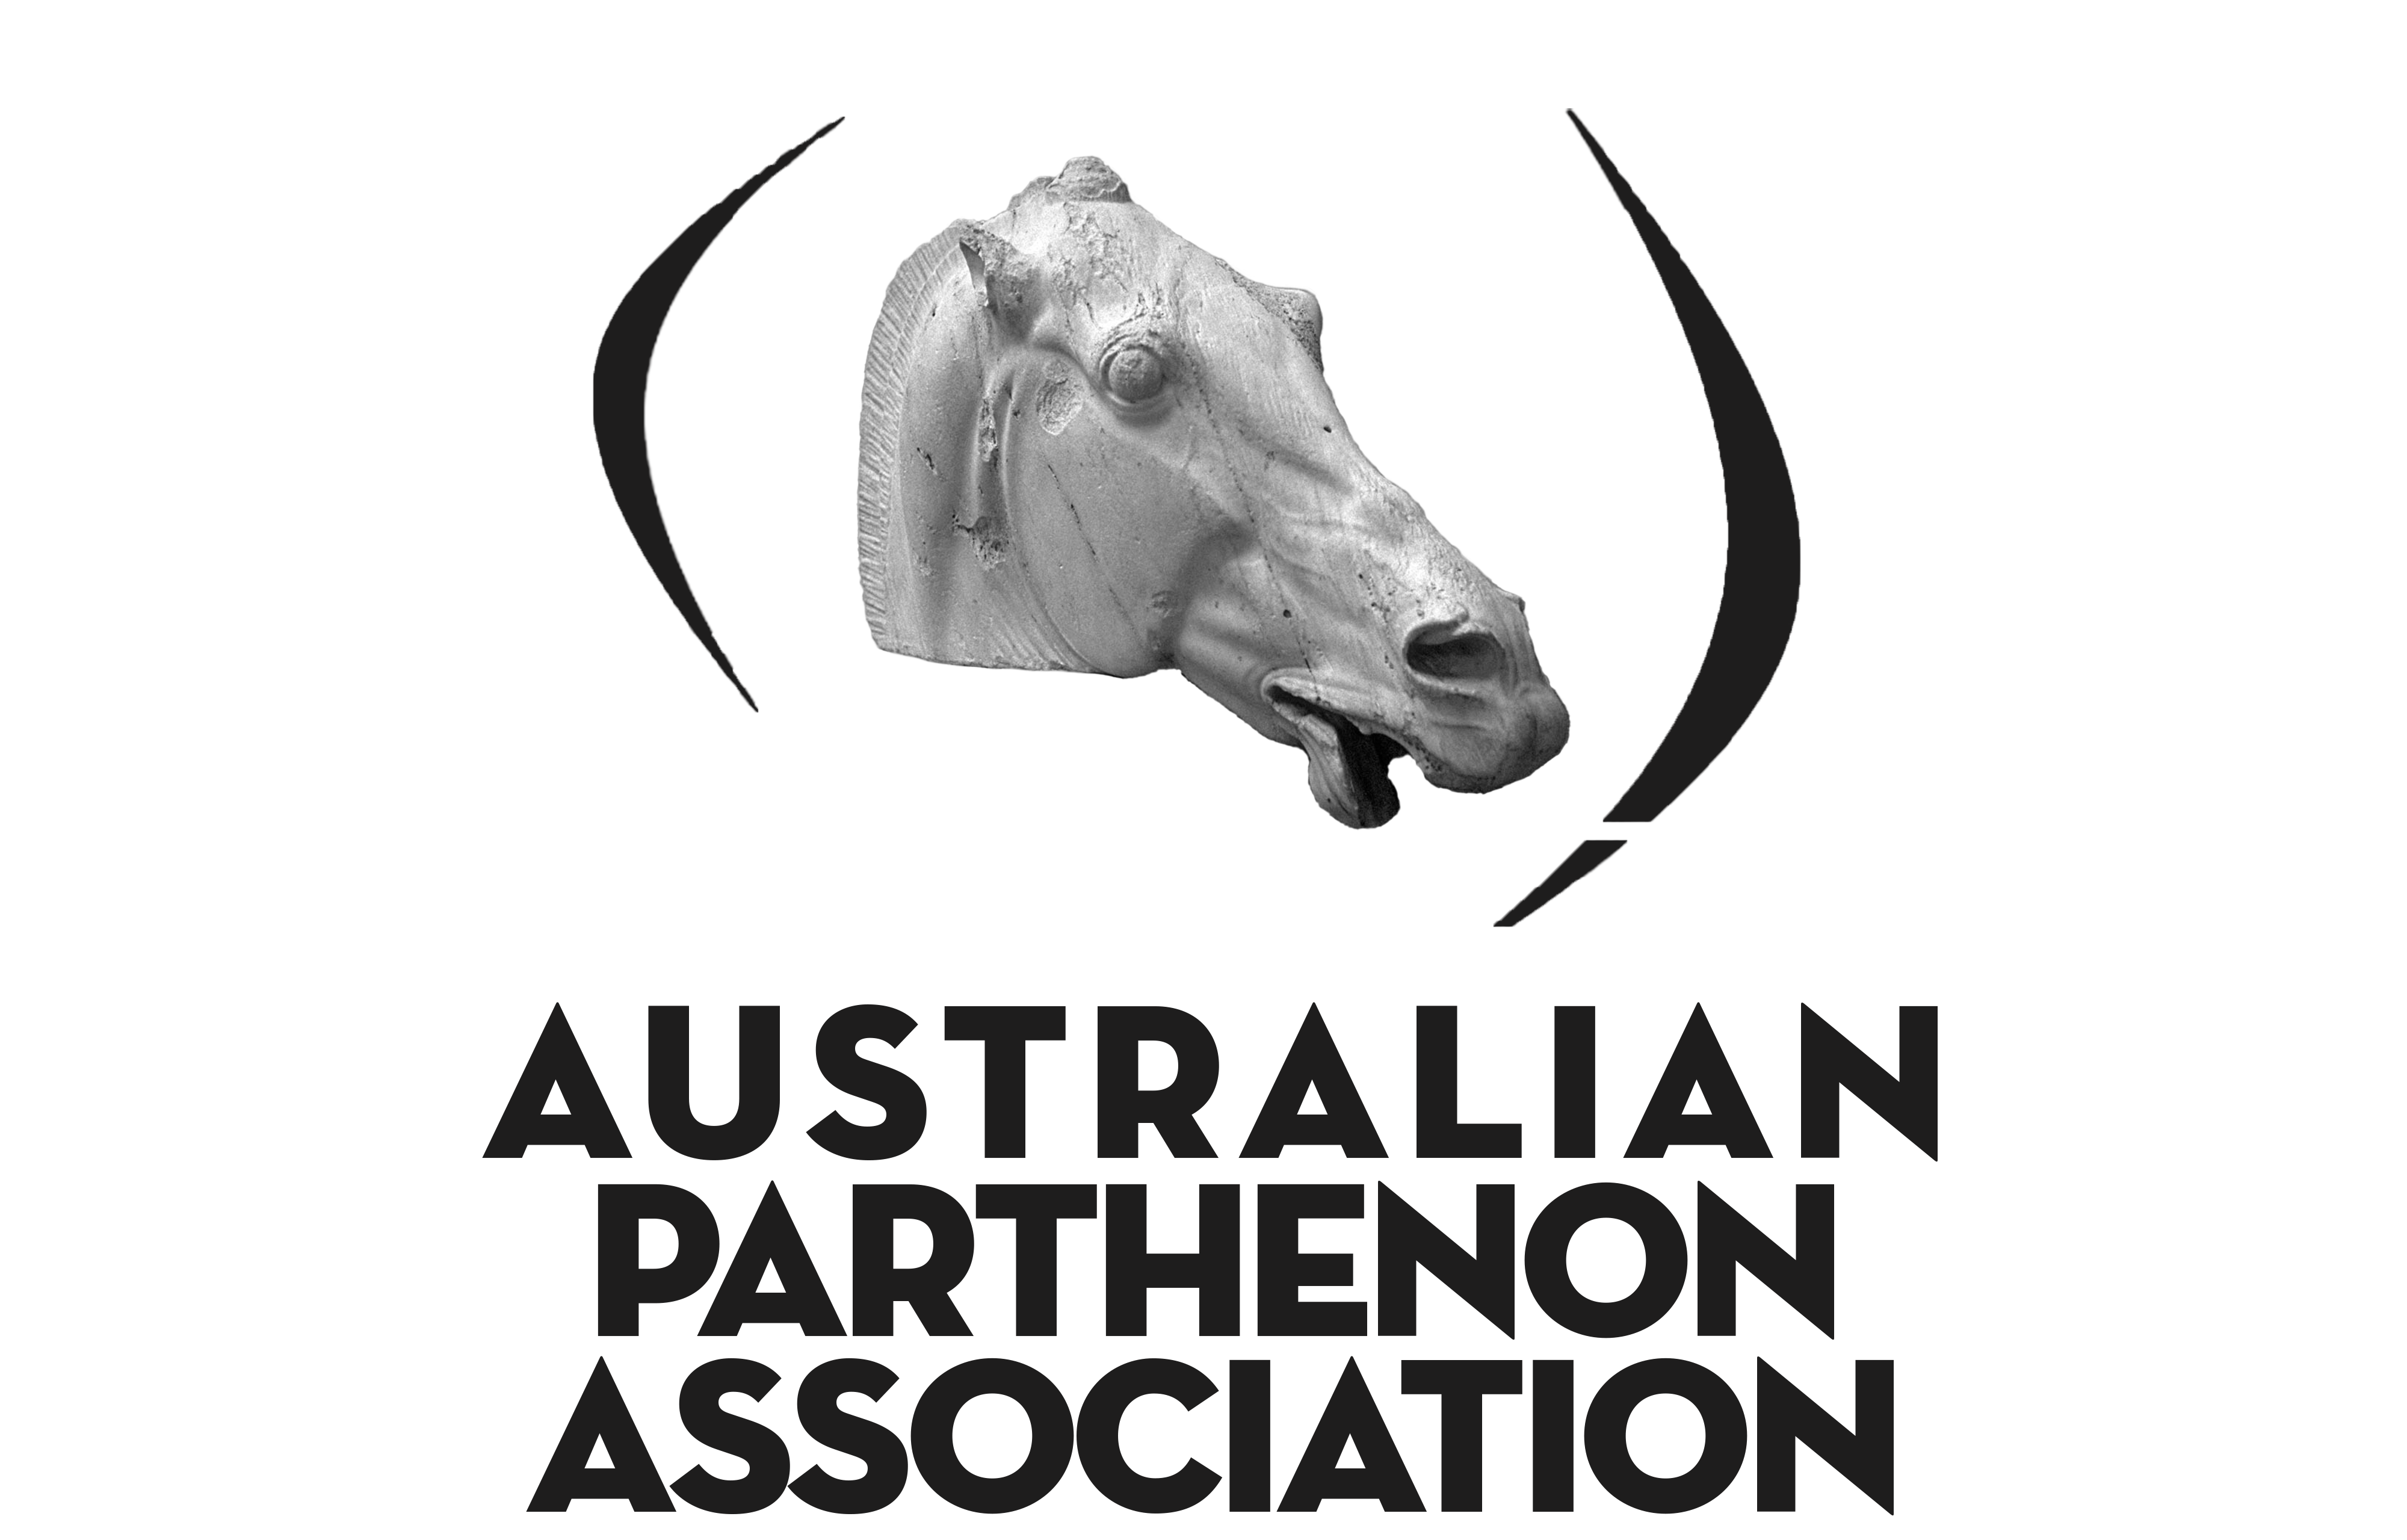 The Australian Parthenon Association